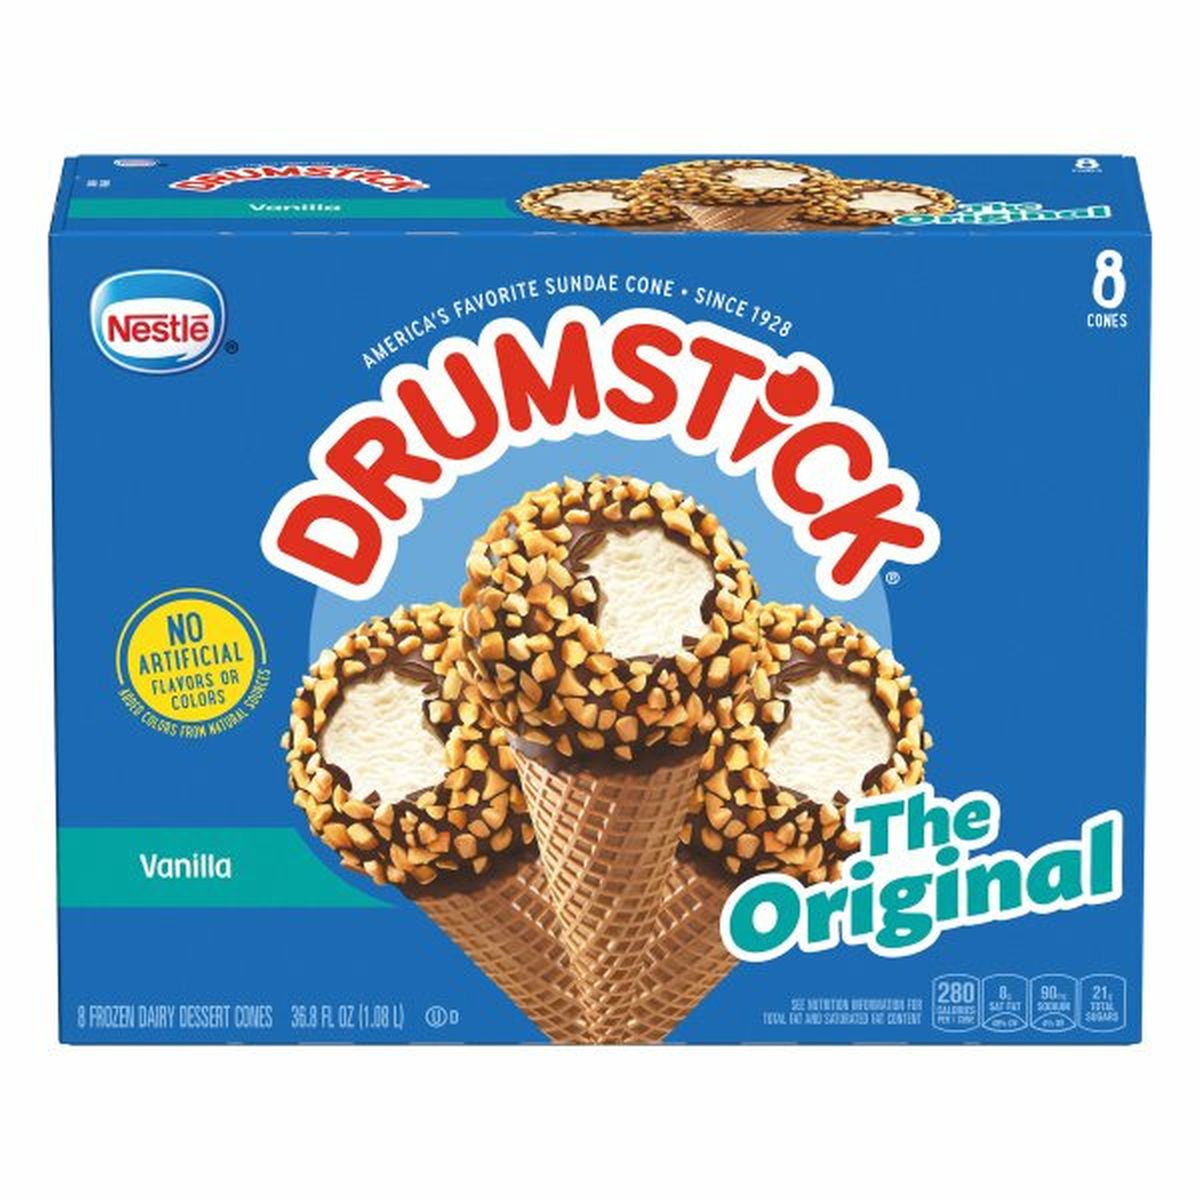 Calories in Drumstick Frozen Dessert Cones, The Original, Vanilla, 8 Pack